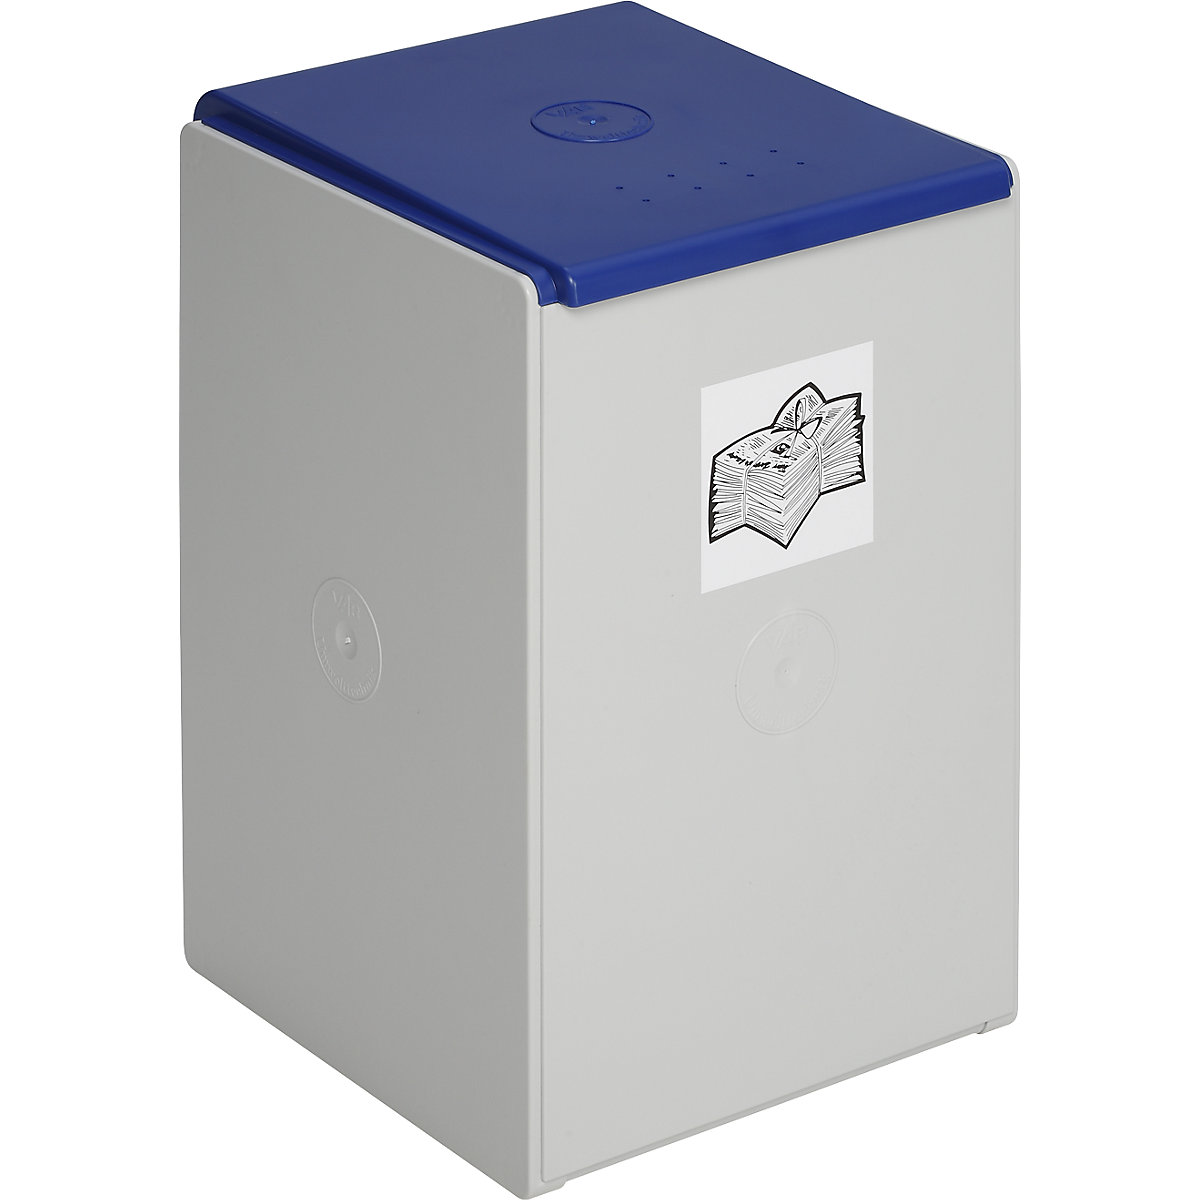 Recipient de sortare și colectare pentru materiale reciclabile – VAR, pentru volum de 60 l, ca recipient individual, albastru-7